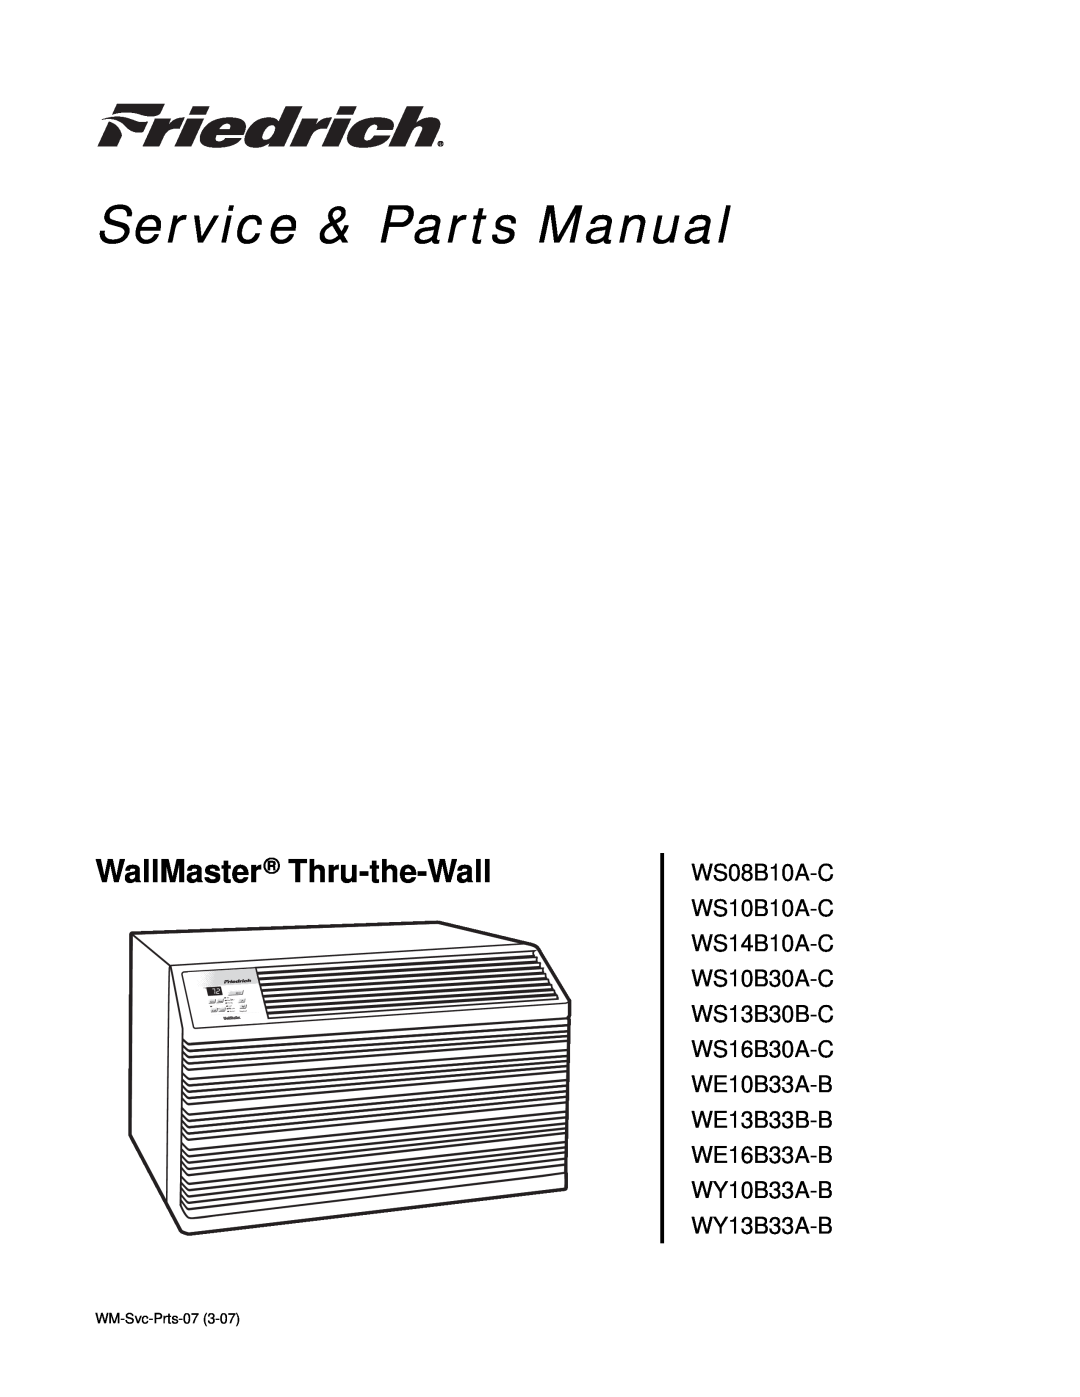 Friedrich WE16B33A-B, WS08B10A-C, WE13B33B-B, WE10B33A-B manual WallMaster Thru-the-Wall, Service & Parts Manual, Power 